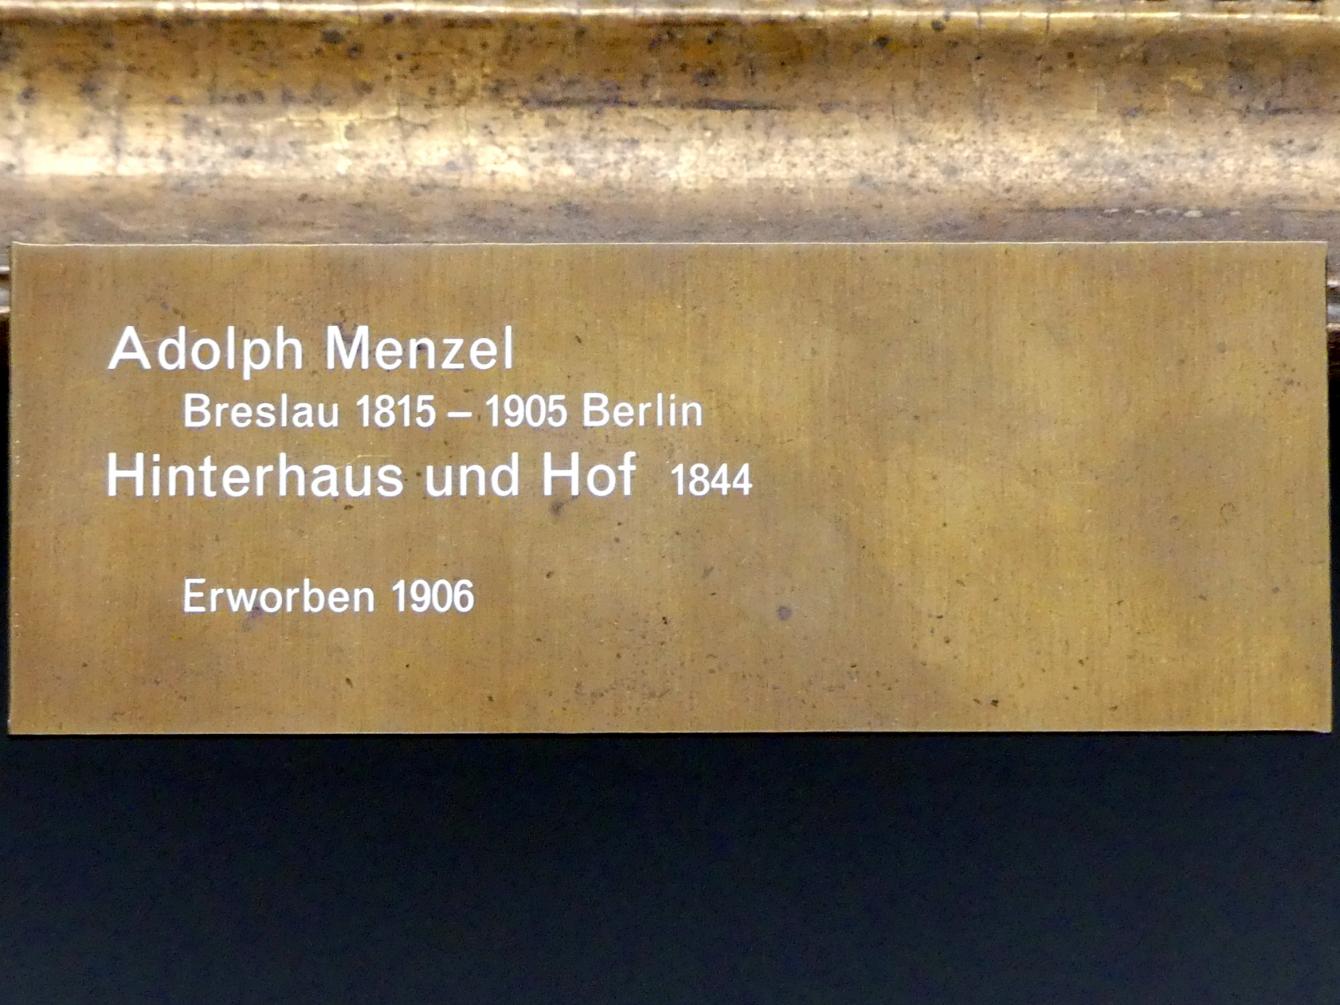 Adolph von Menzel (1844–1888), Hinterhaus und Hof, Berlin, Alte Nationalgalerie, Saal 108, Adolph Menzel, 1844, Bild 2/2